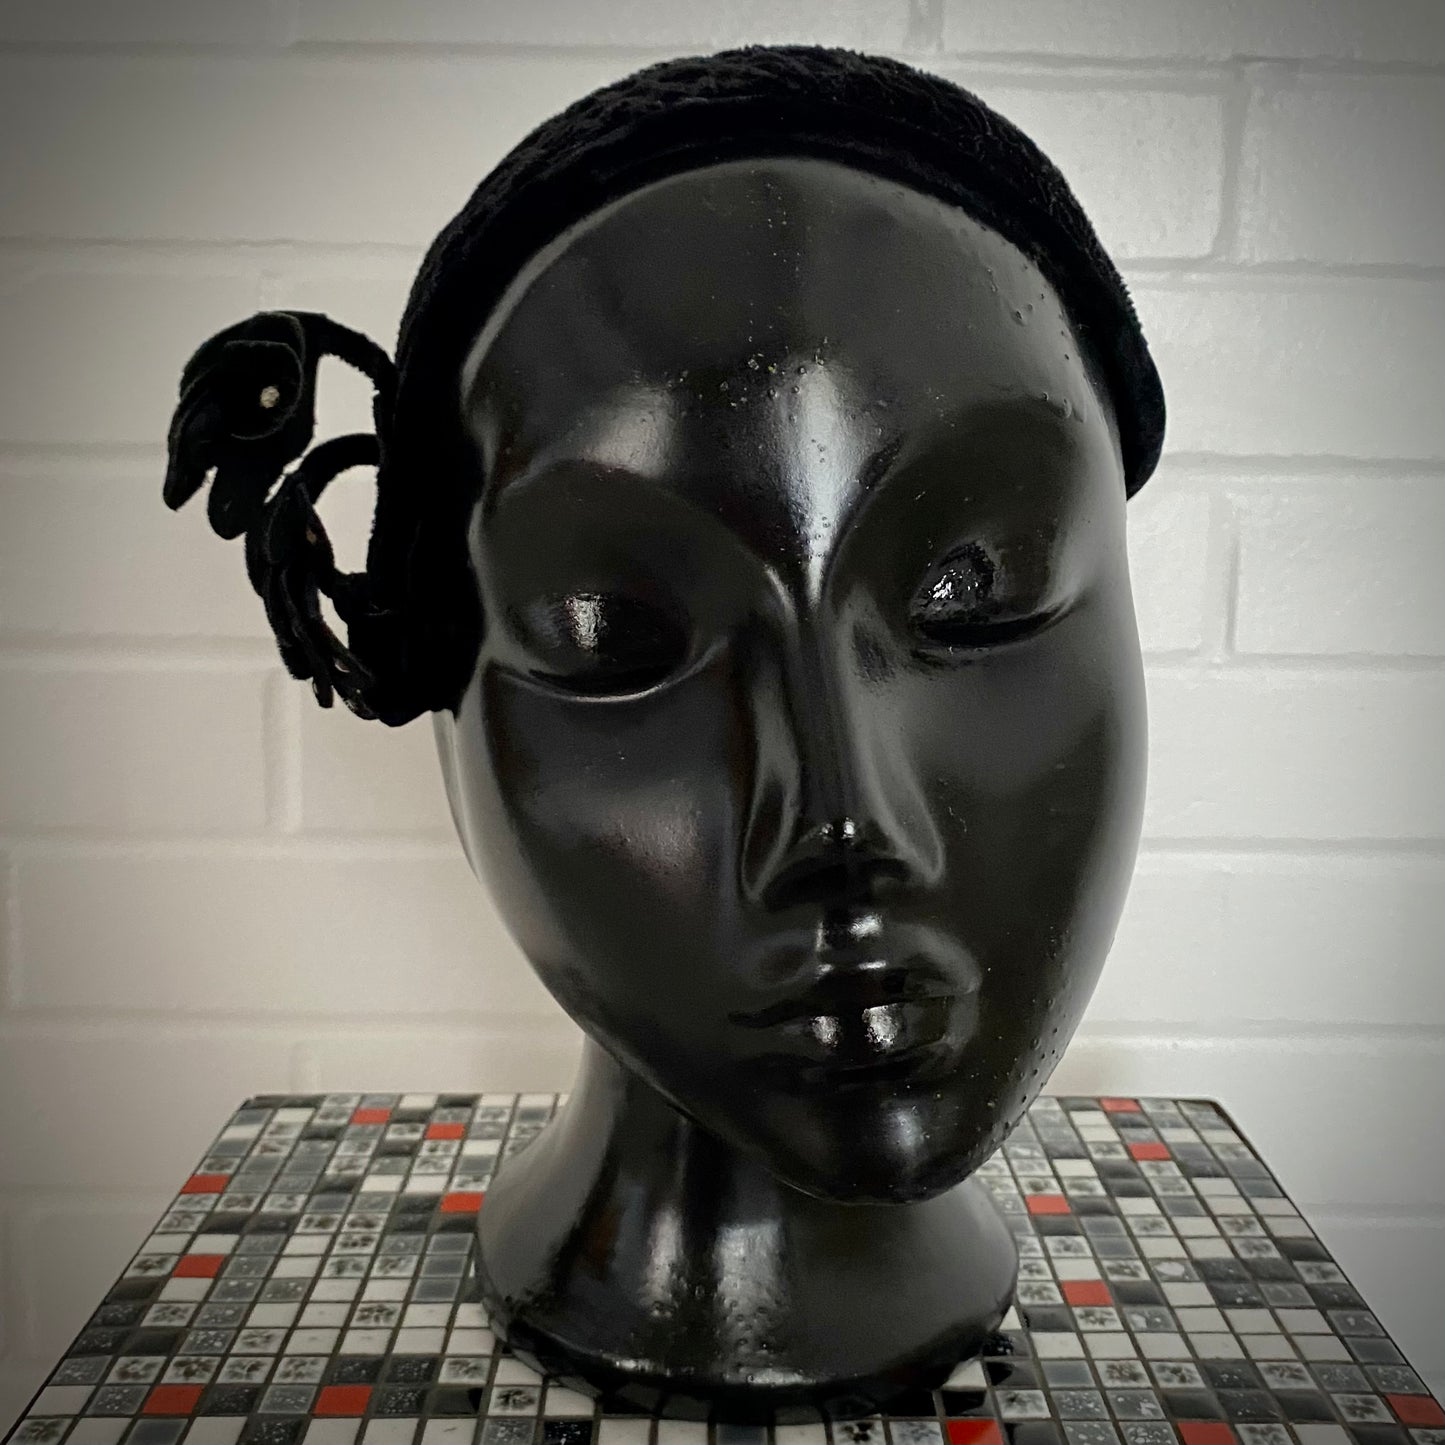 1940s Black Velvet Juliet Helmet Hat